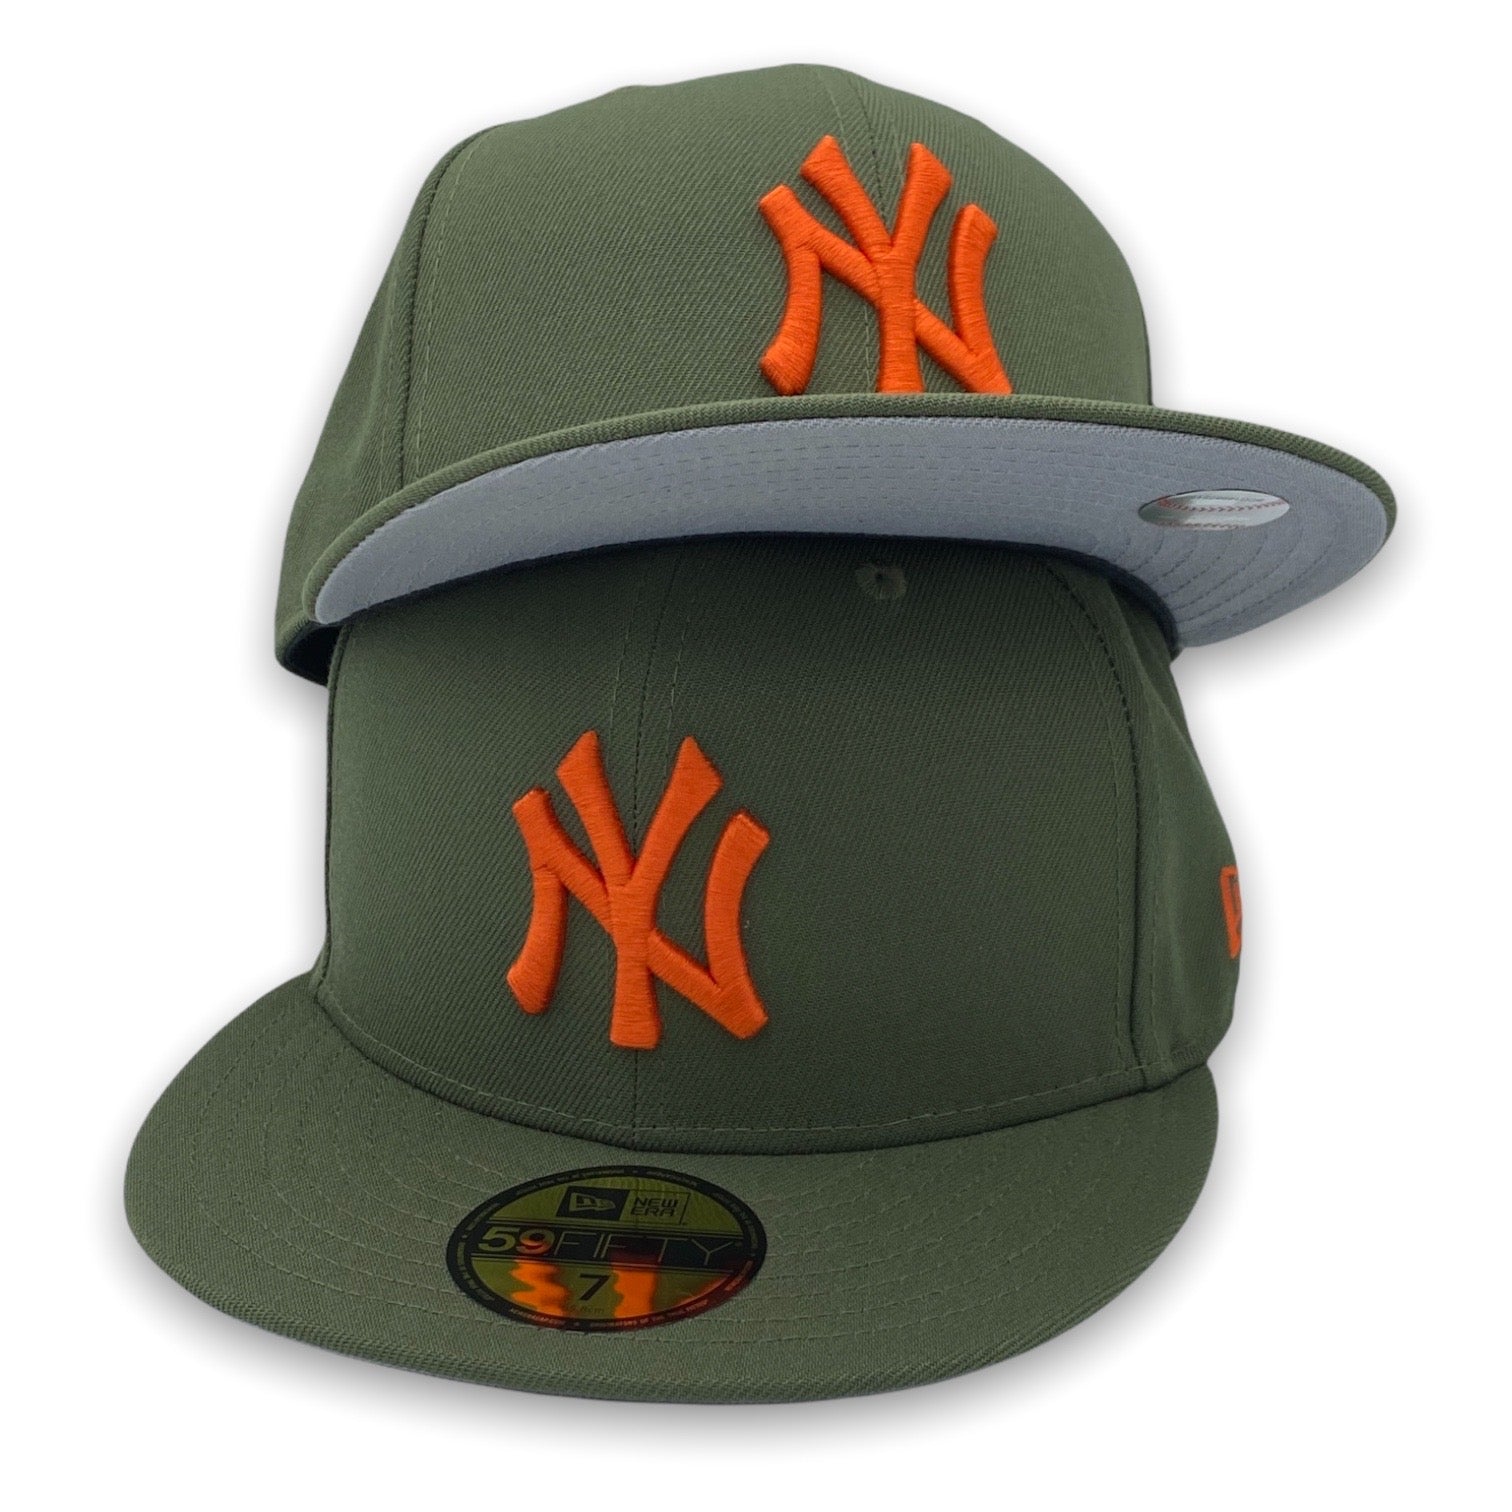 NY Yankees Basic New Era 59FIFTY Olive & Orange Fitted Hat – USA CAP KING